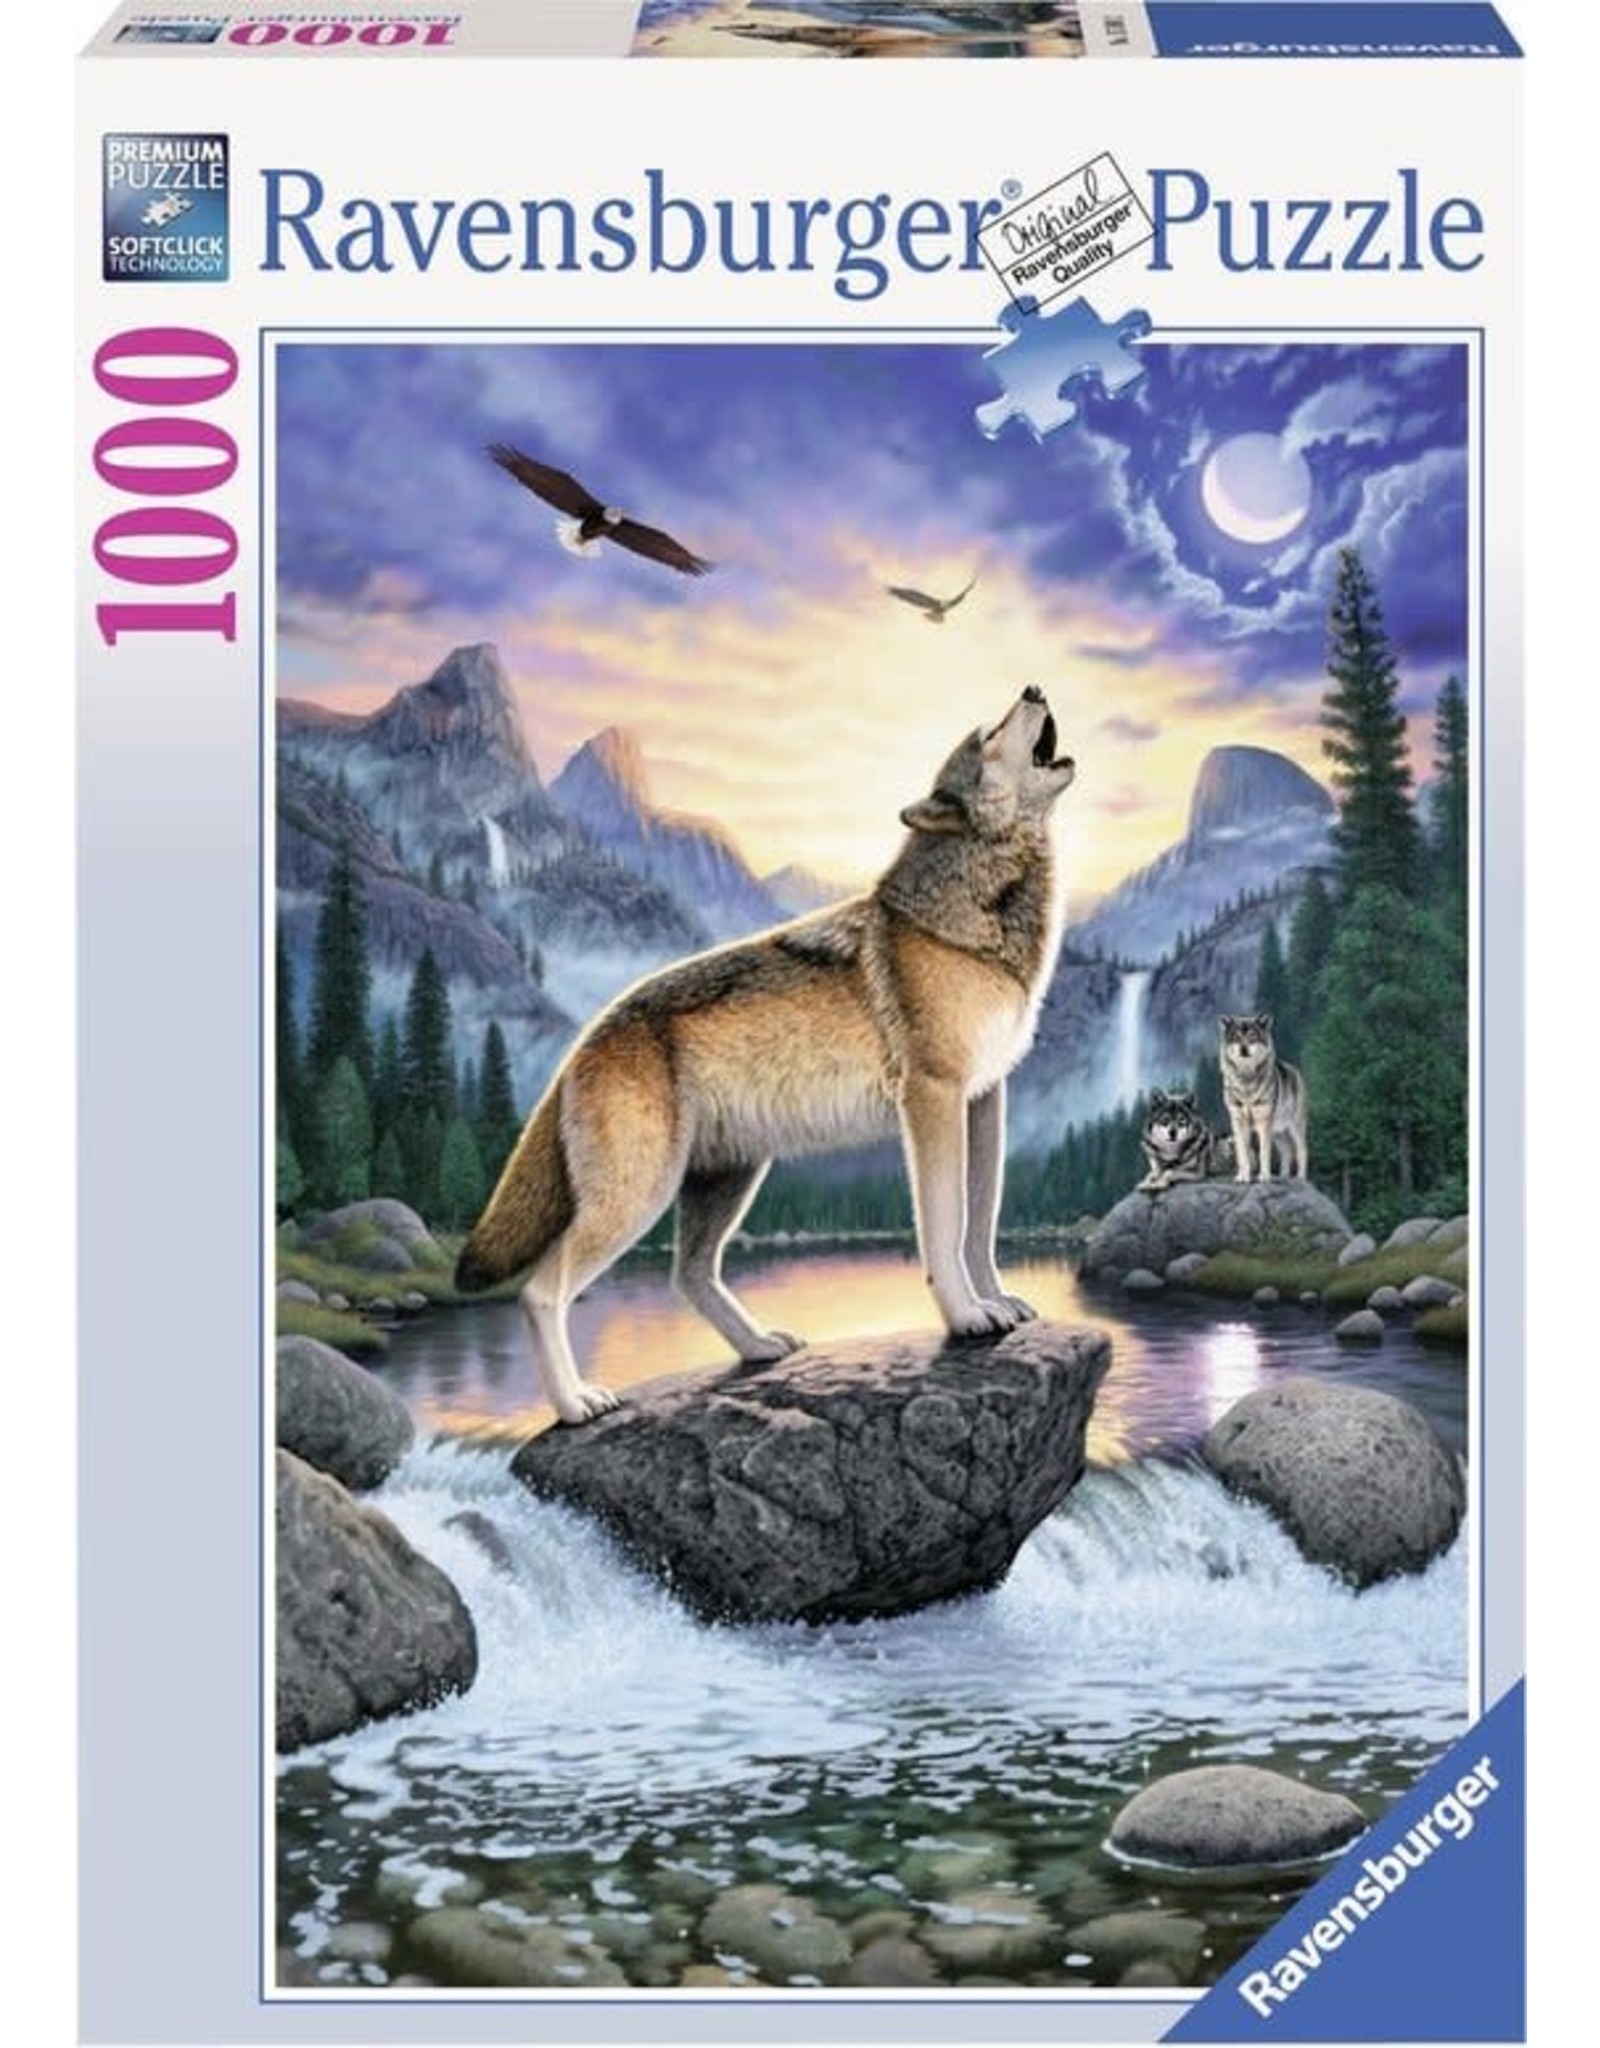 Ravensburger Ravensburger puzzel 153602 Het Huilen Van De Wolf 1000 stukjes